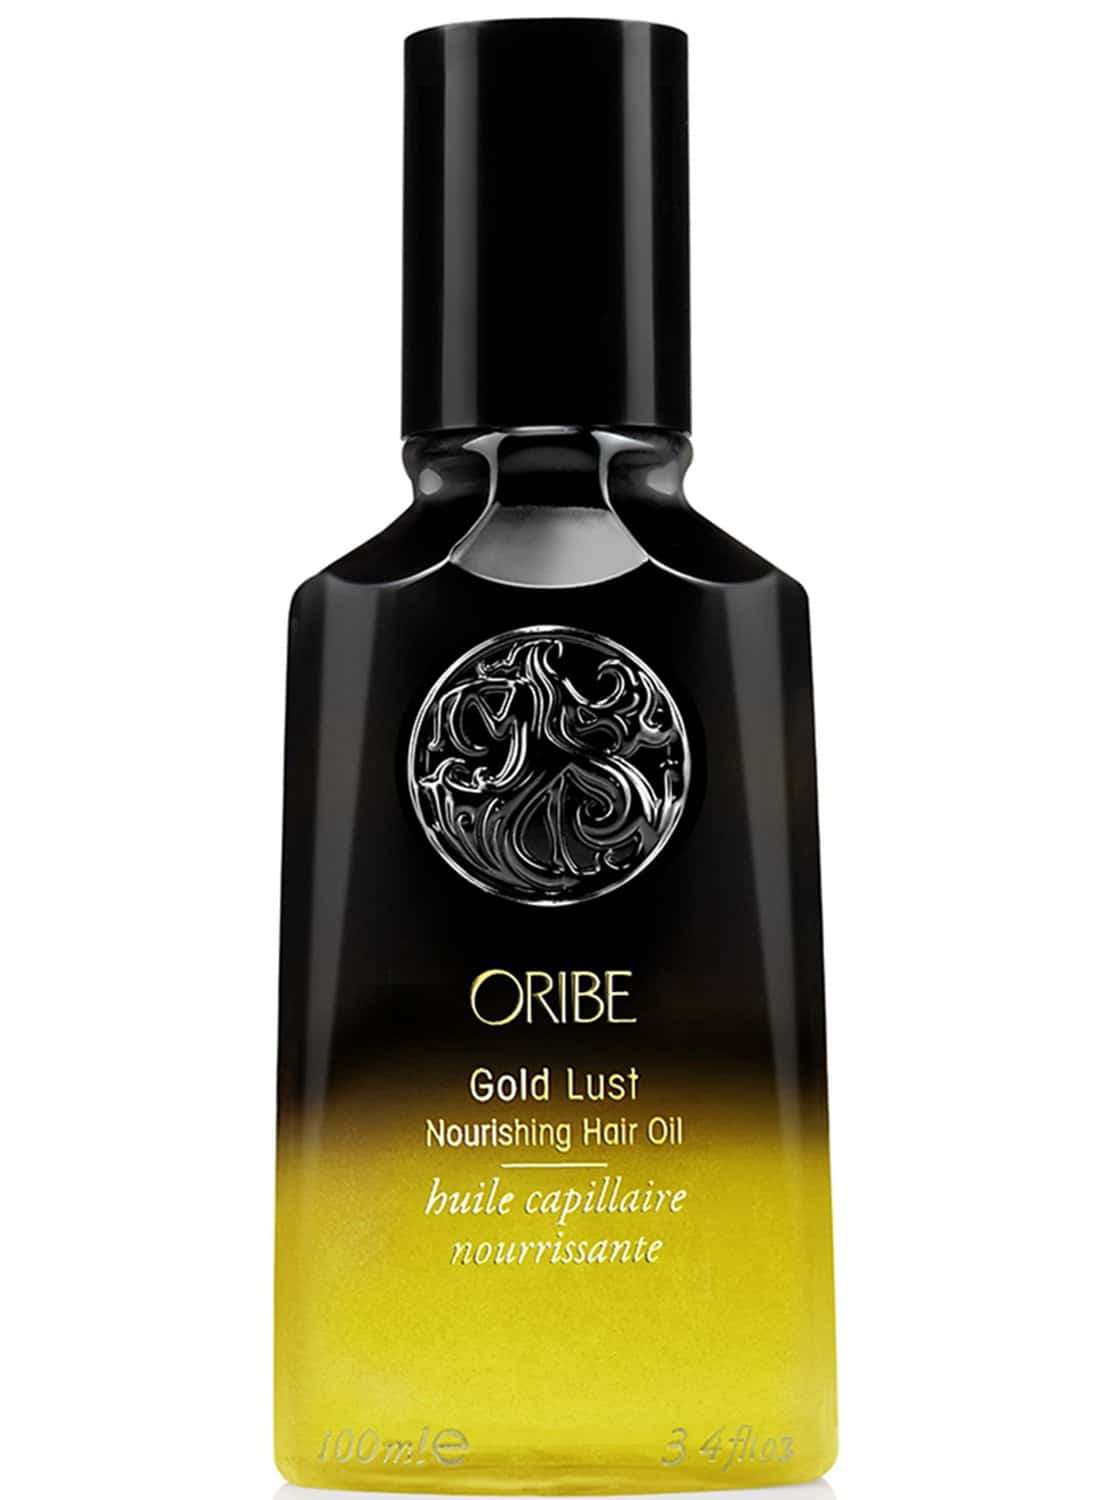 Gold Lust Nourishing Hair Oil 100ml | Oribe 